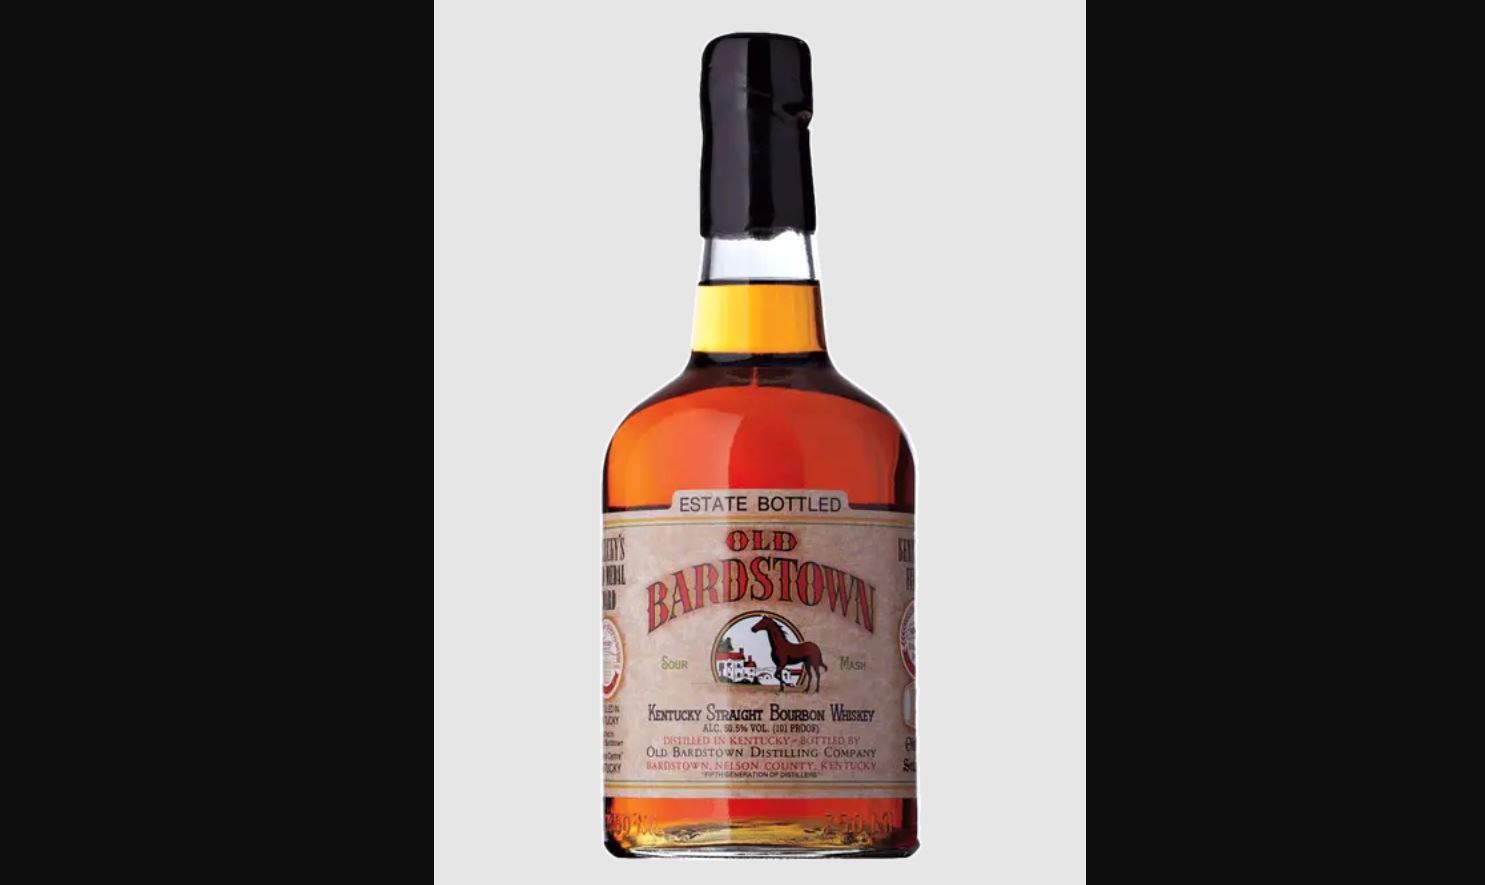 Old Bardstown Estate Bottle